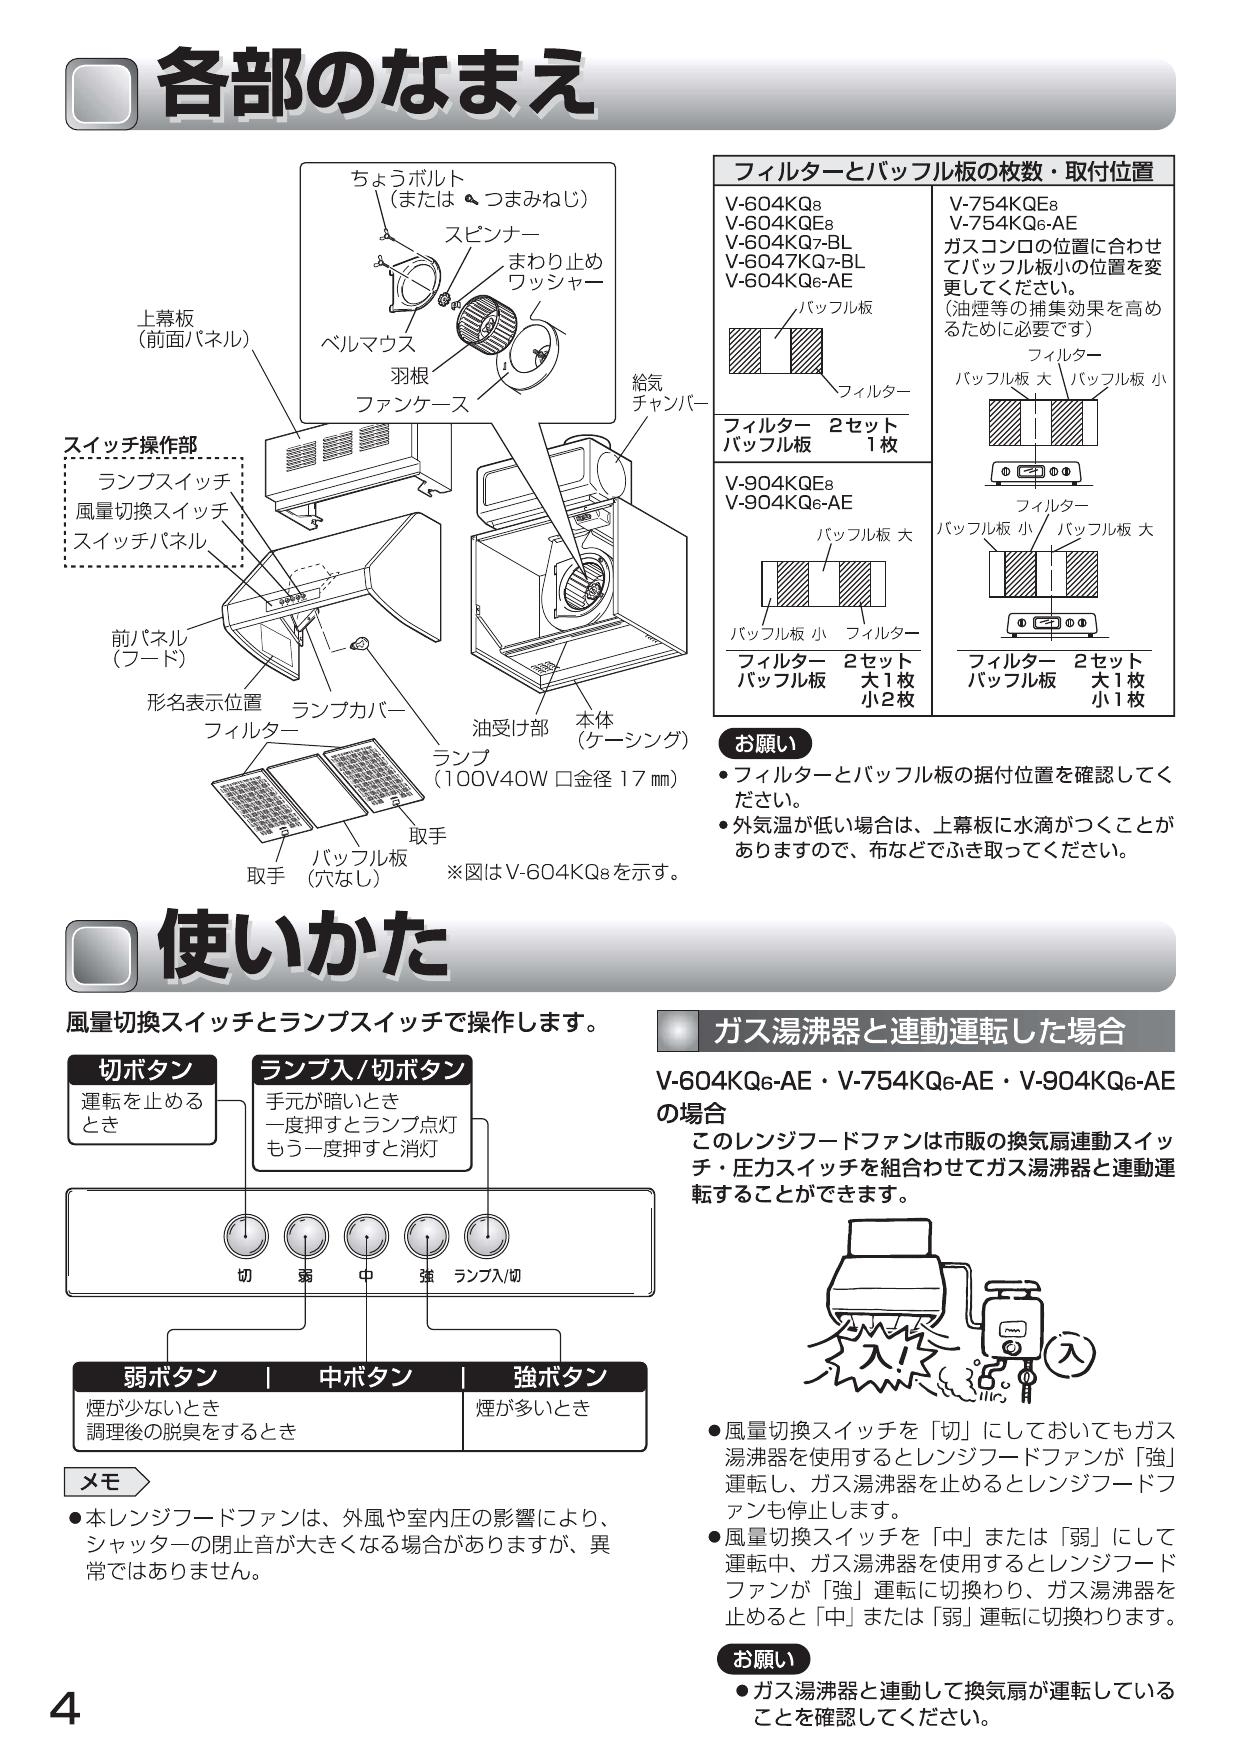 信頼】 三菱 V-904KQE9 レンジフードファン深形 自然給気タイプ fisd.lk